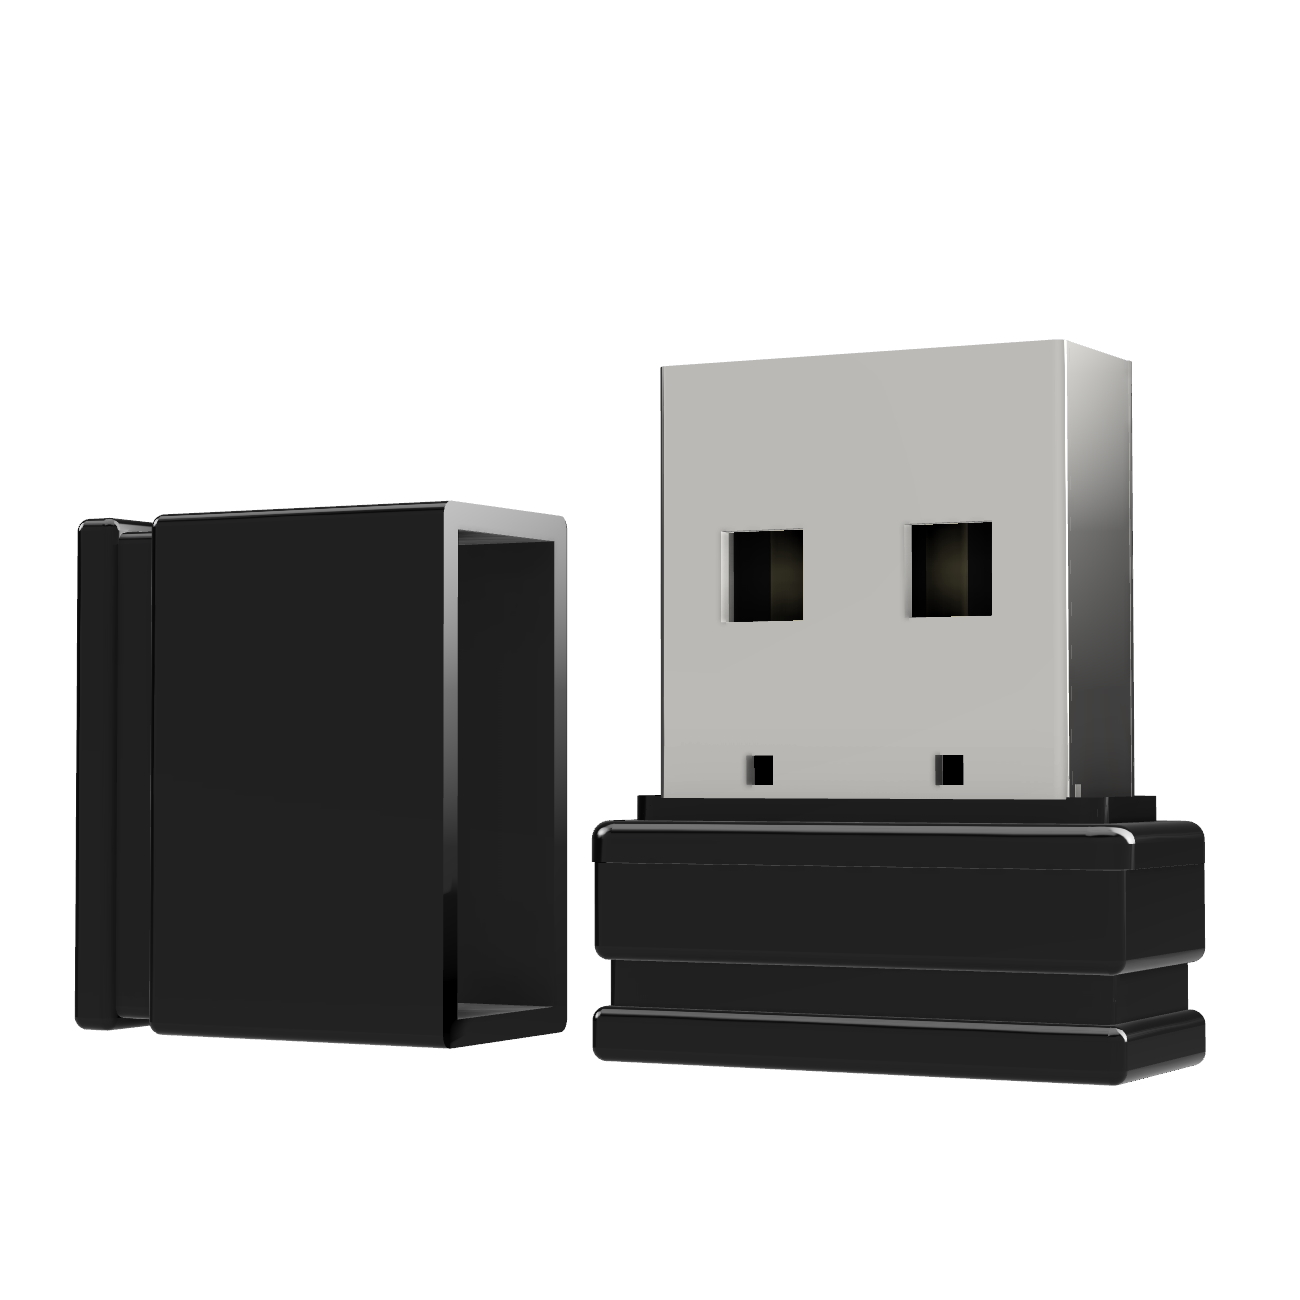 USB GERMANY Mini 2 P1 (Schwarz, GB) USB-Stick ®ULTRA